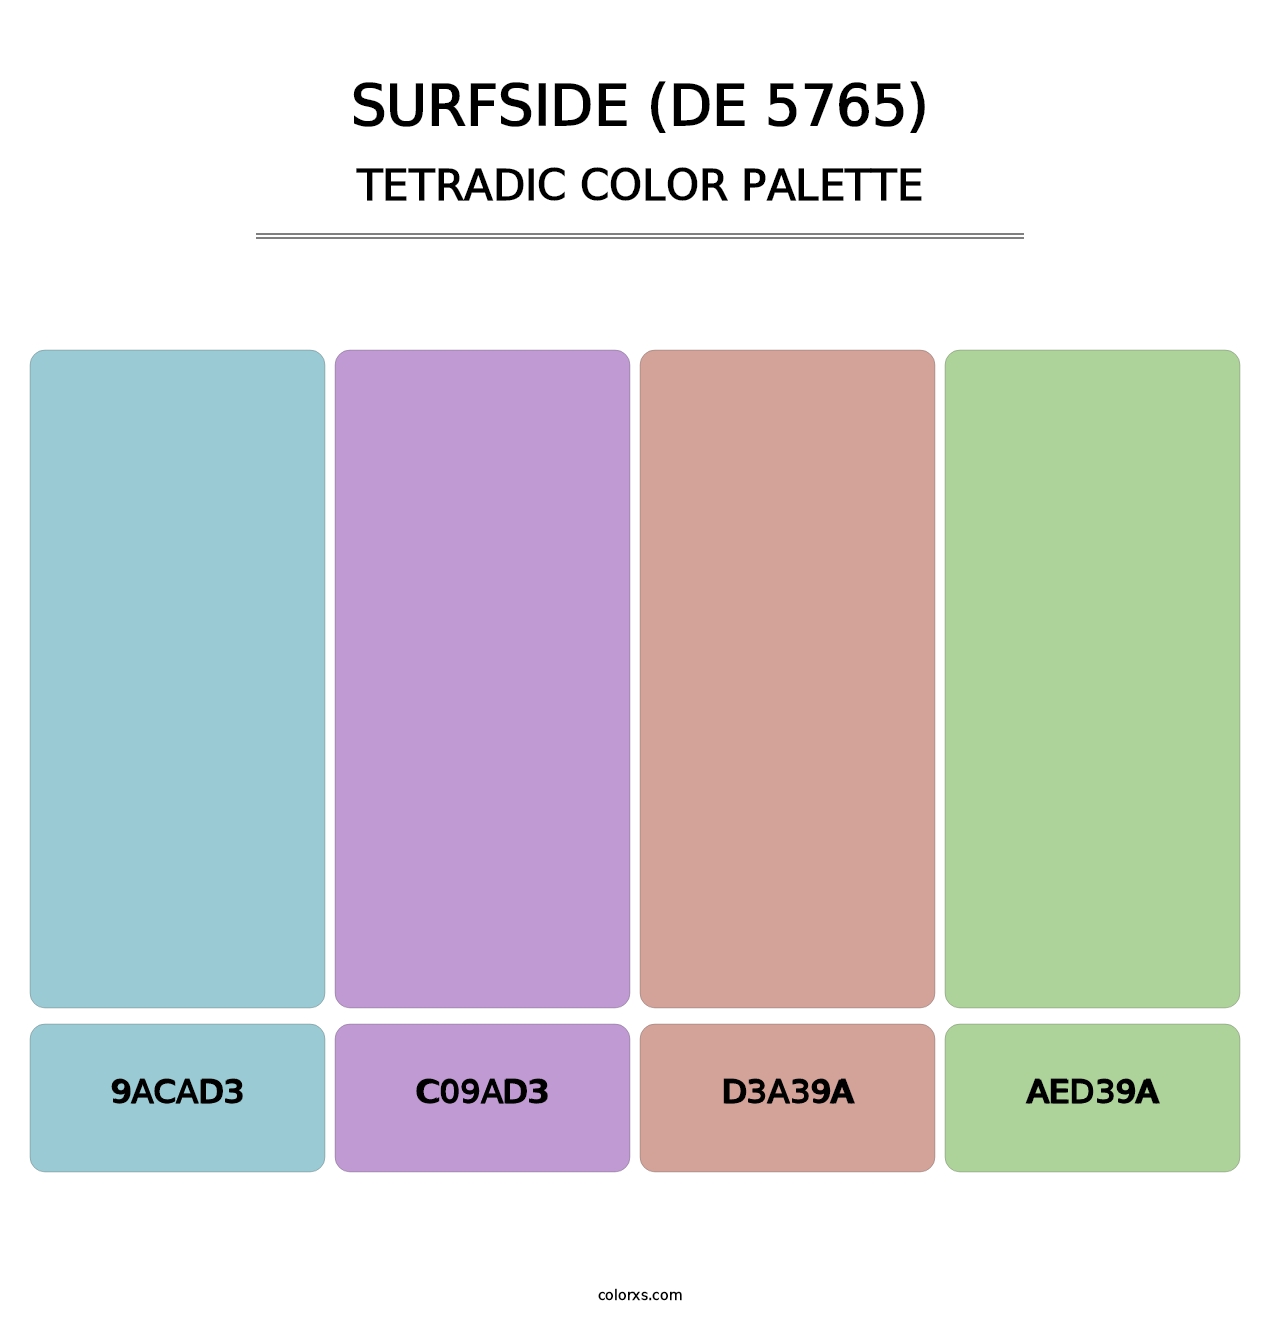 Surfside (DE 5765) - Tetradic Color Palette